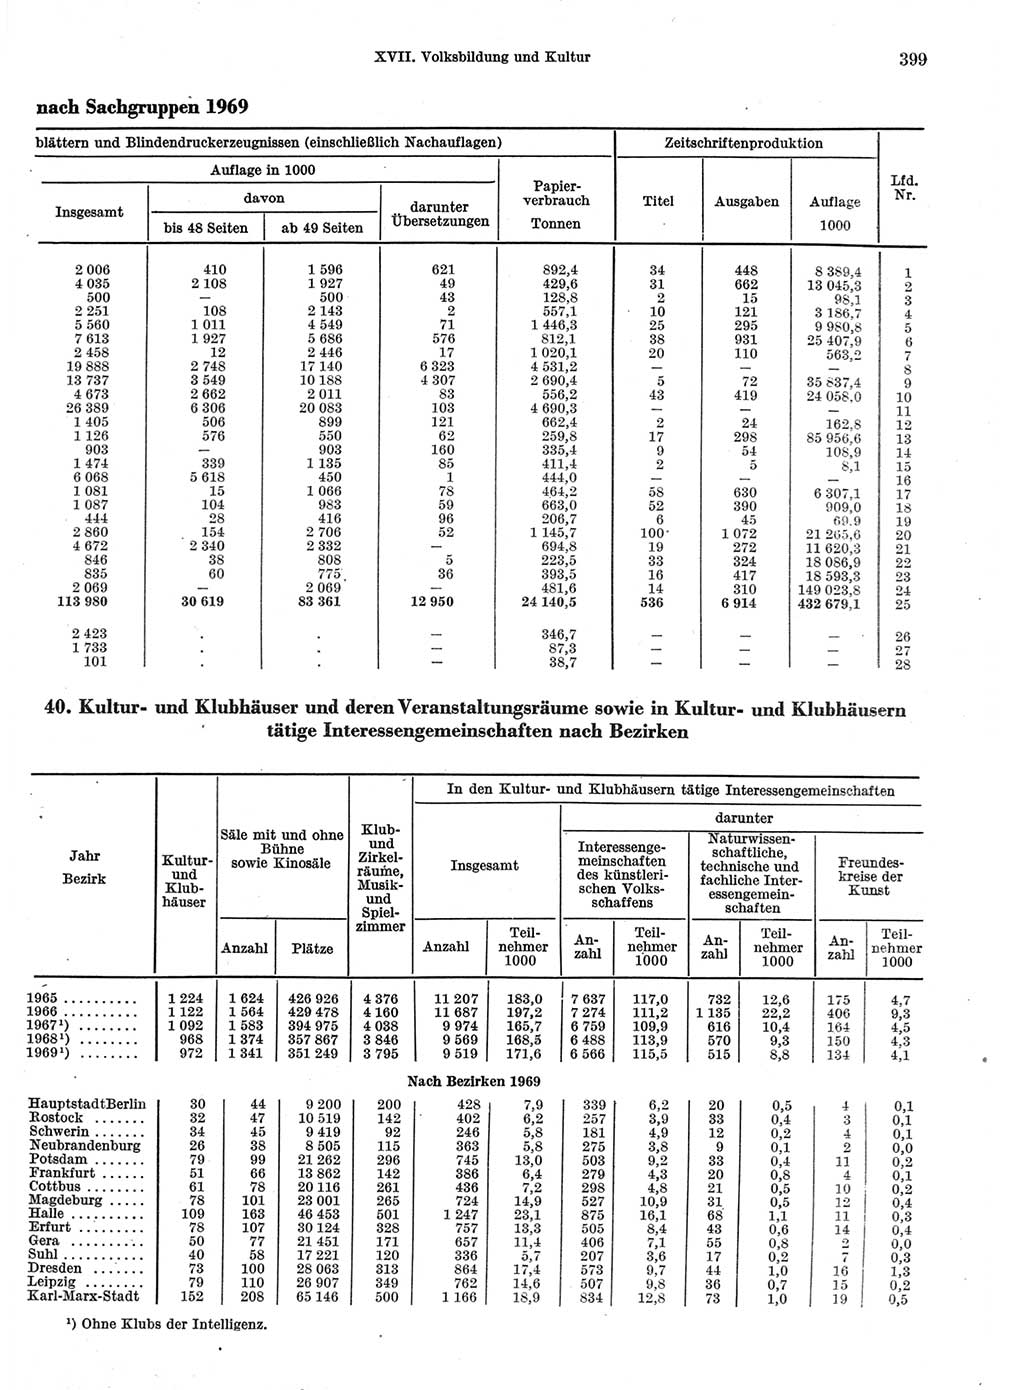 Statistisches Jahrbuch der Deutschen Demokratischen Republik (DDR) 1970, Seite 399 (Stat. Jb. DDR 1970, S. 399)